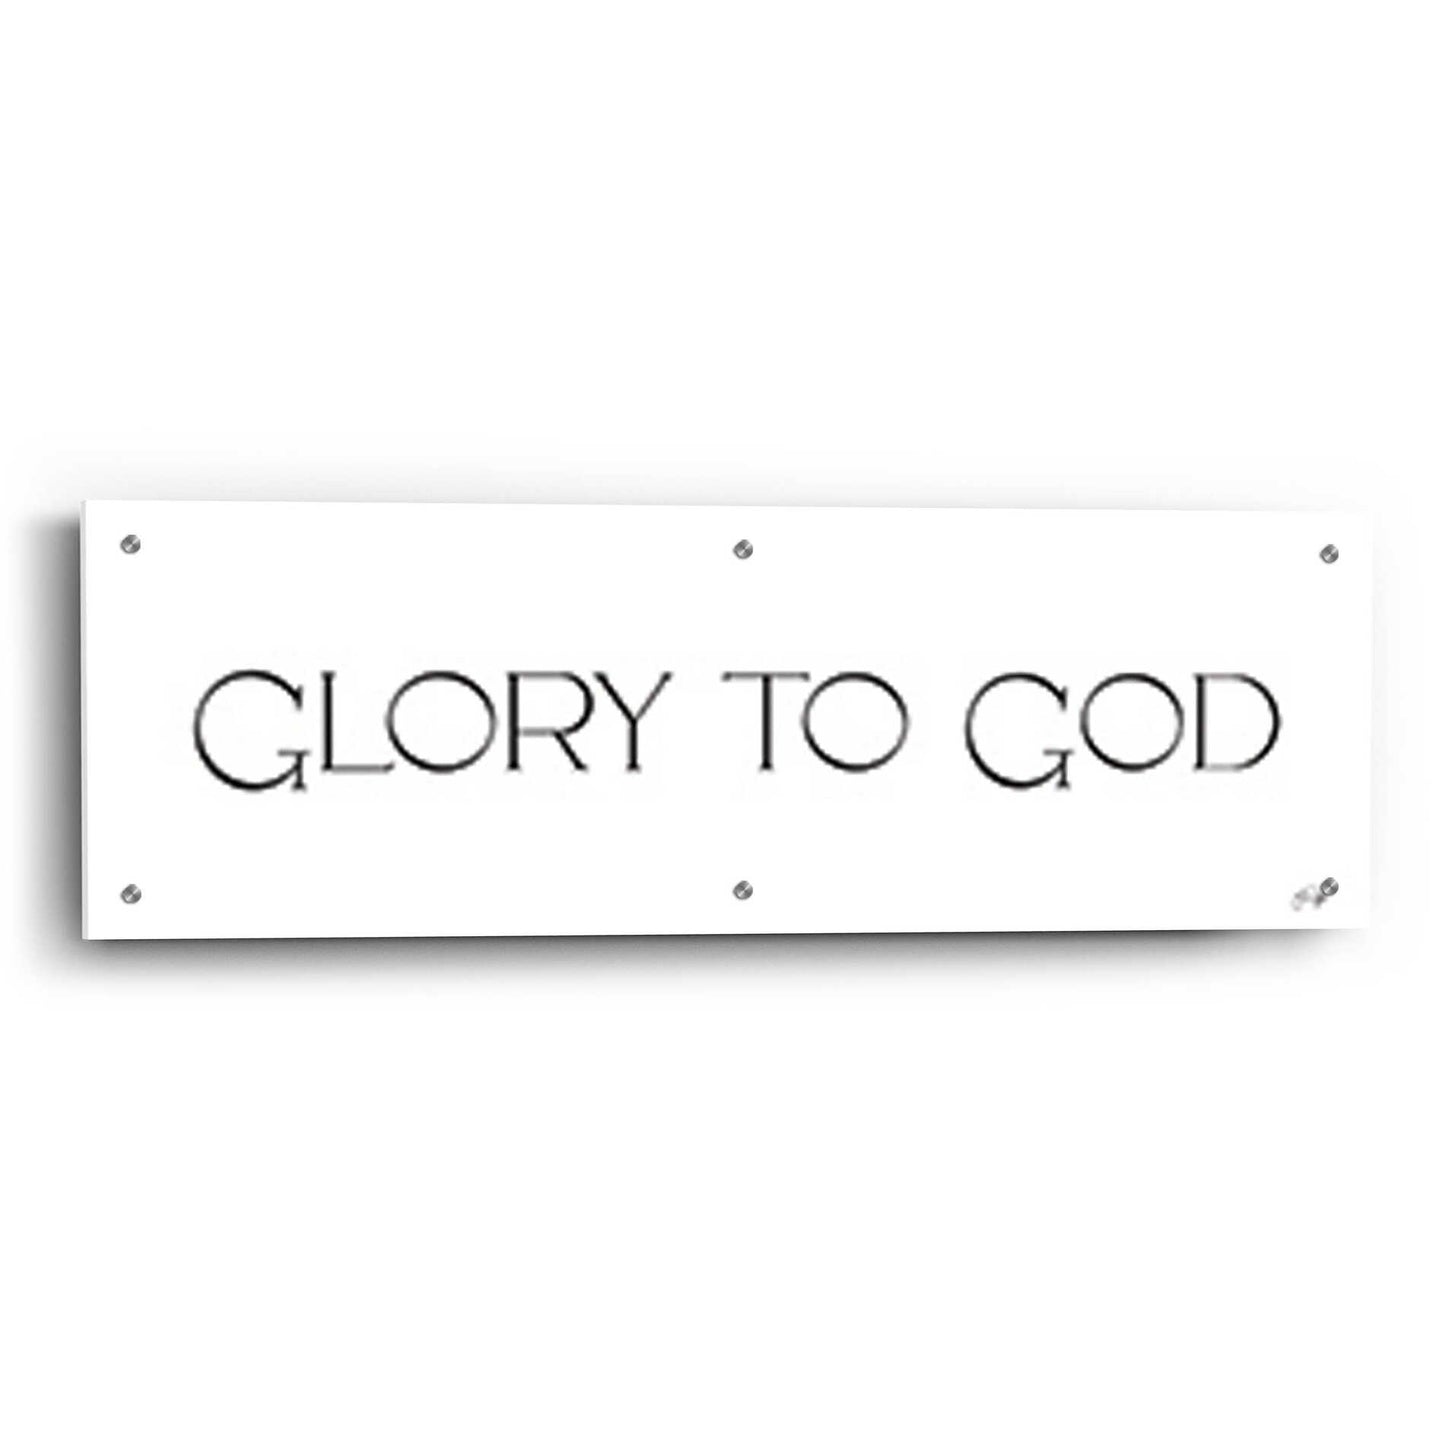 Epic Art 'Glory to God' by Yass Naffas Designs, Acrylic Glass Wall Art,36x12